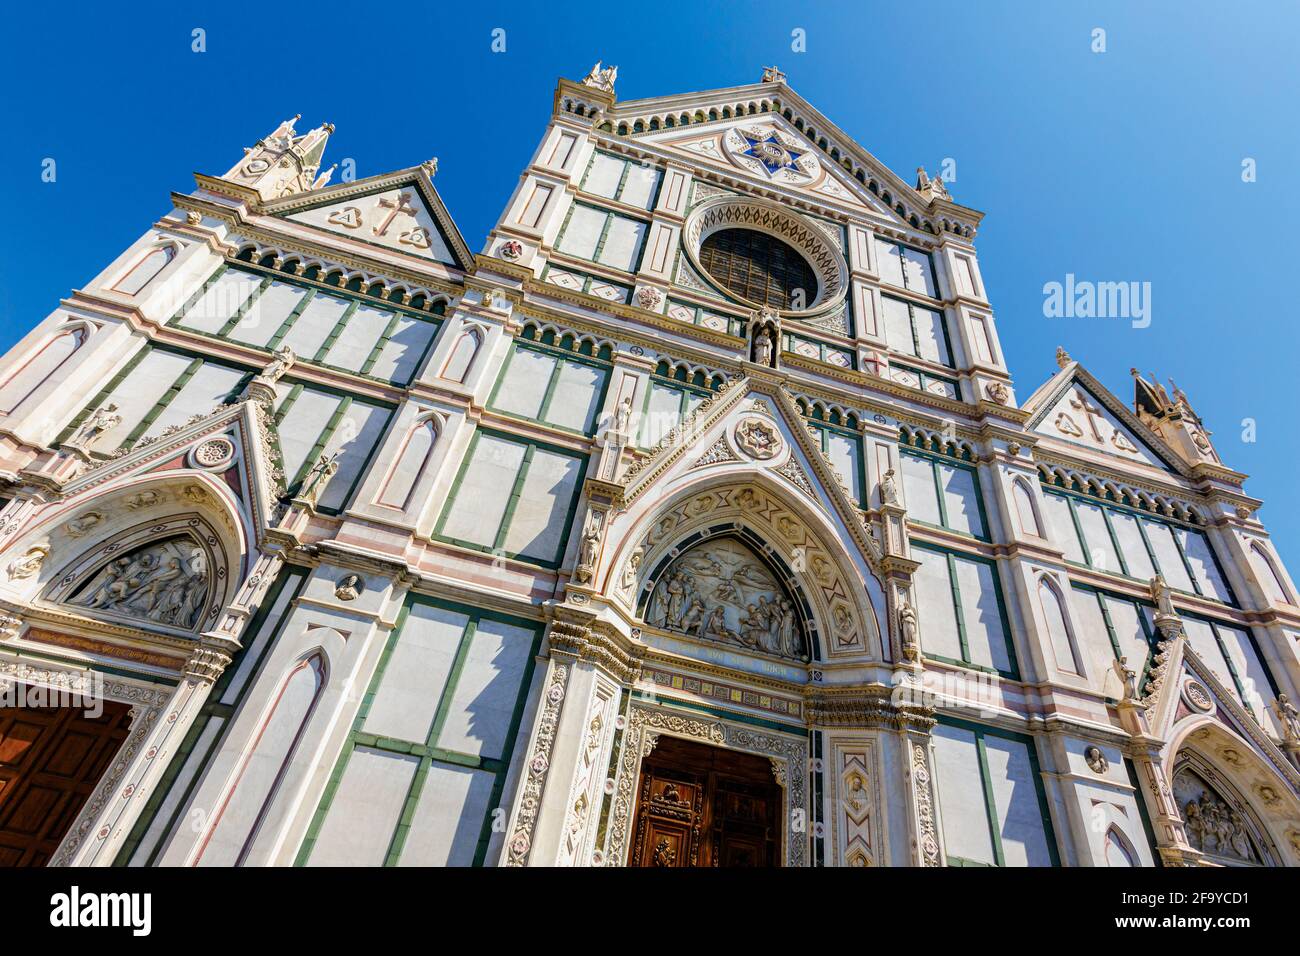 Florencia, Provincia de Florencia, Toscana, Italia. Iglesia de Santa Croce. El centro histórico de Florencia es declarado Patrimonio de la Humanidad por la UNESCO. Foto de stock